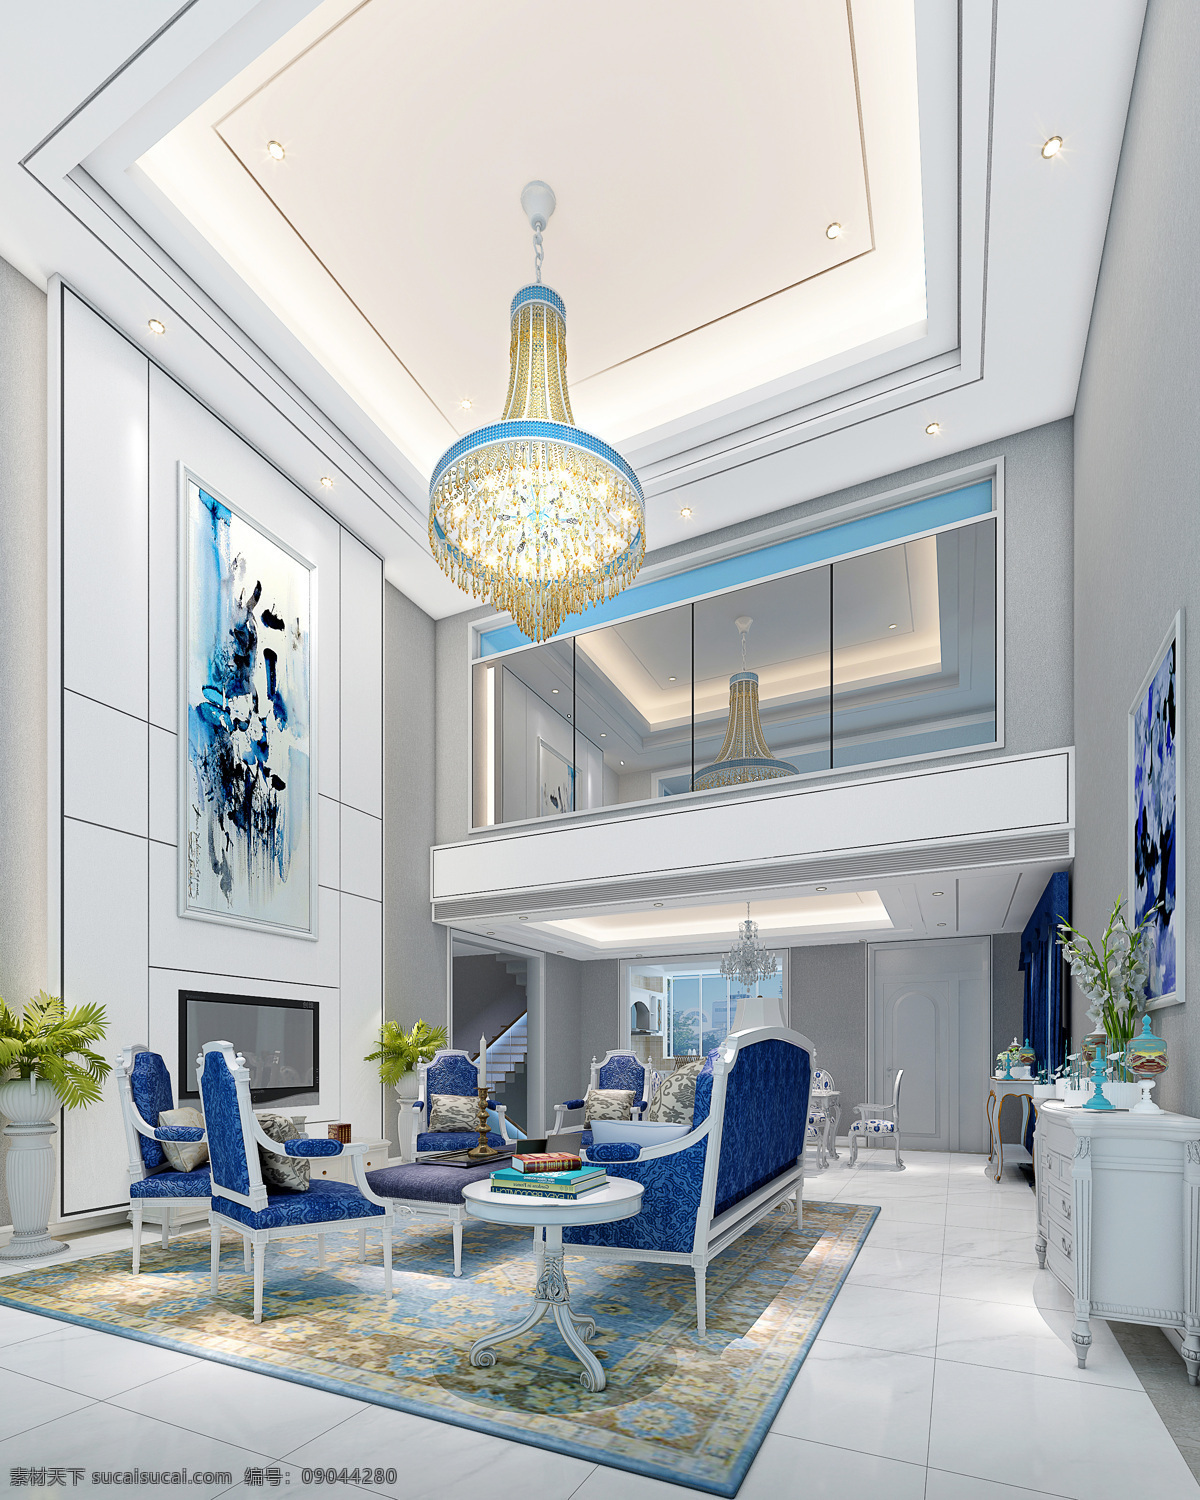 现代 时尚 客厅 深蓝色 餐椅 室内装修 效果图 蓝色餐椅 蓝色画作装饰 瓷砖地板 水晶吊灯